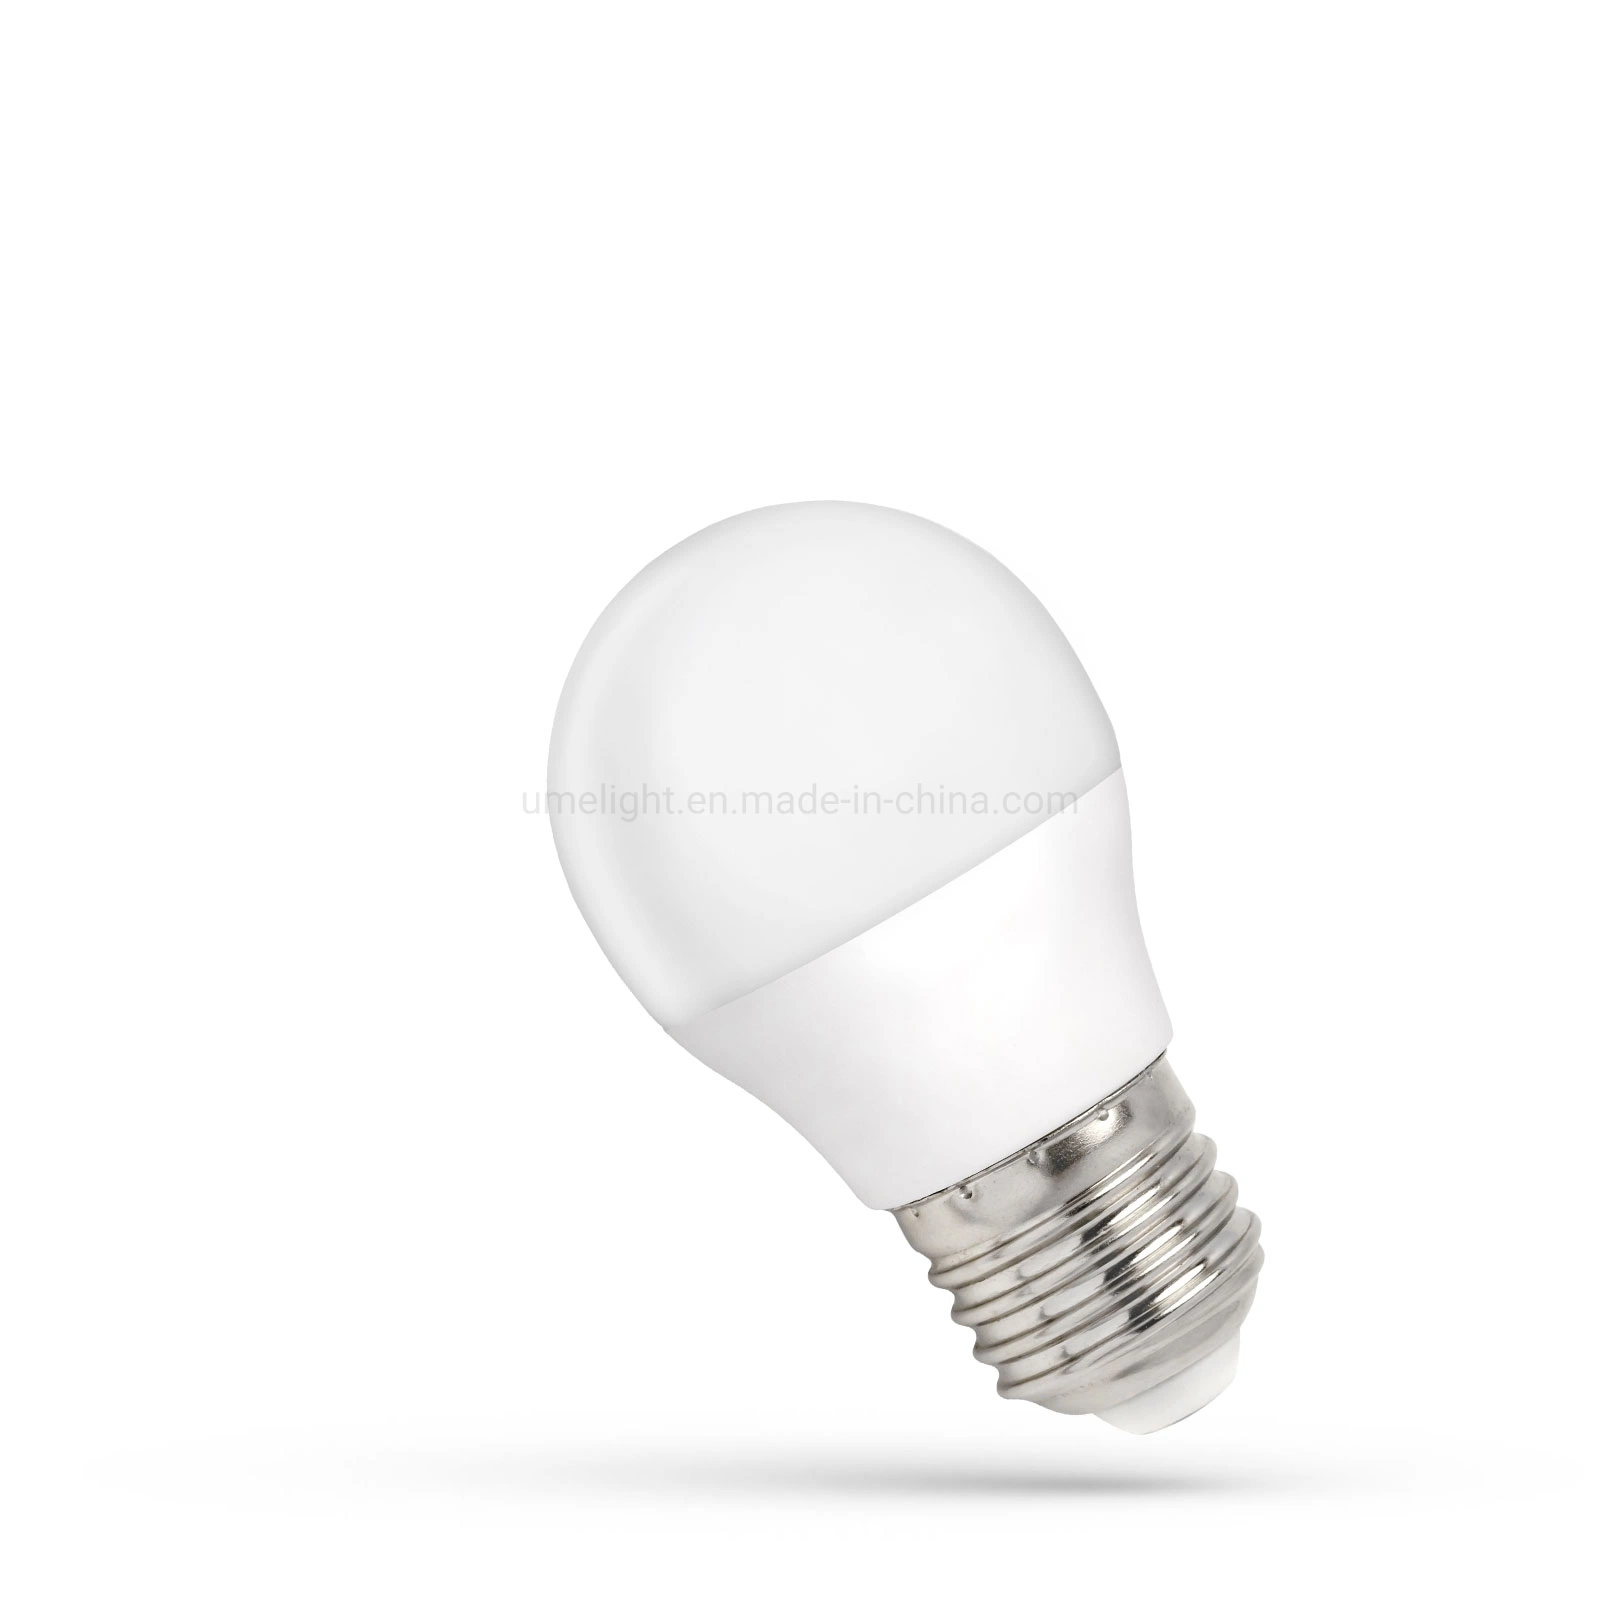 LED Ball 1W E27 Dimmable LED Globe Light Bulb B22 LED Light Source Lamparas for Home Lighting Outdoor Luminaires